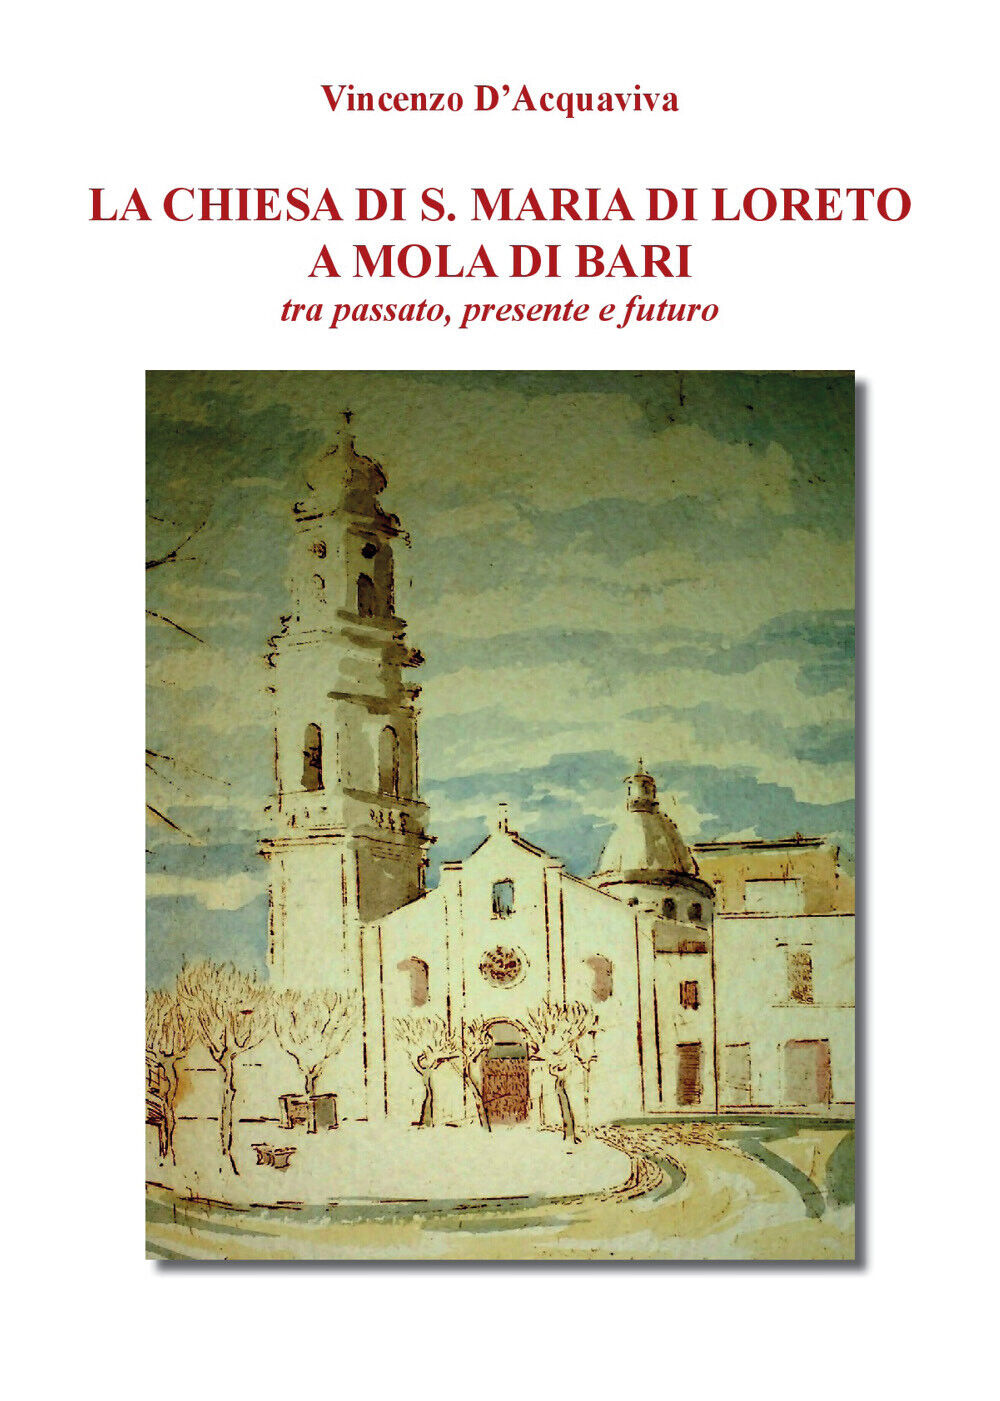 La chiesa di S. Maria di Loreto a Mola di Bari tra passato, presente e futuro di